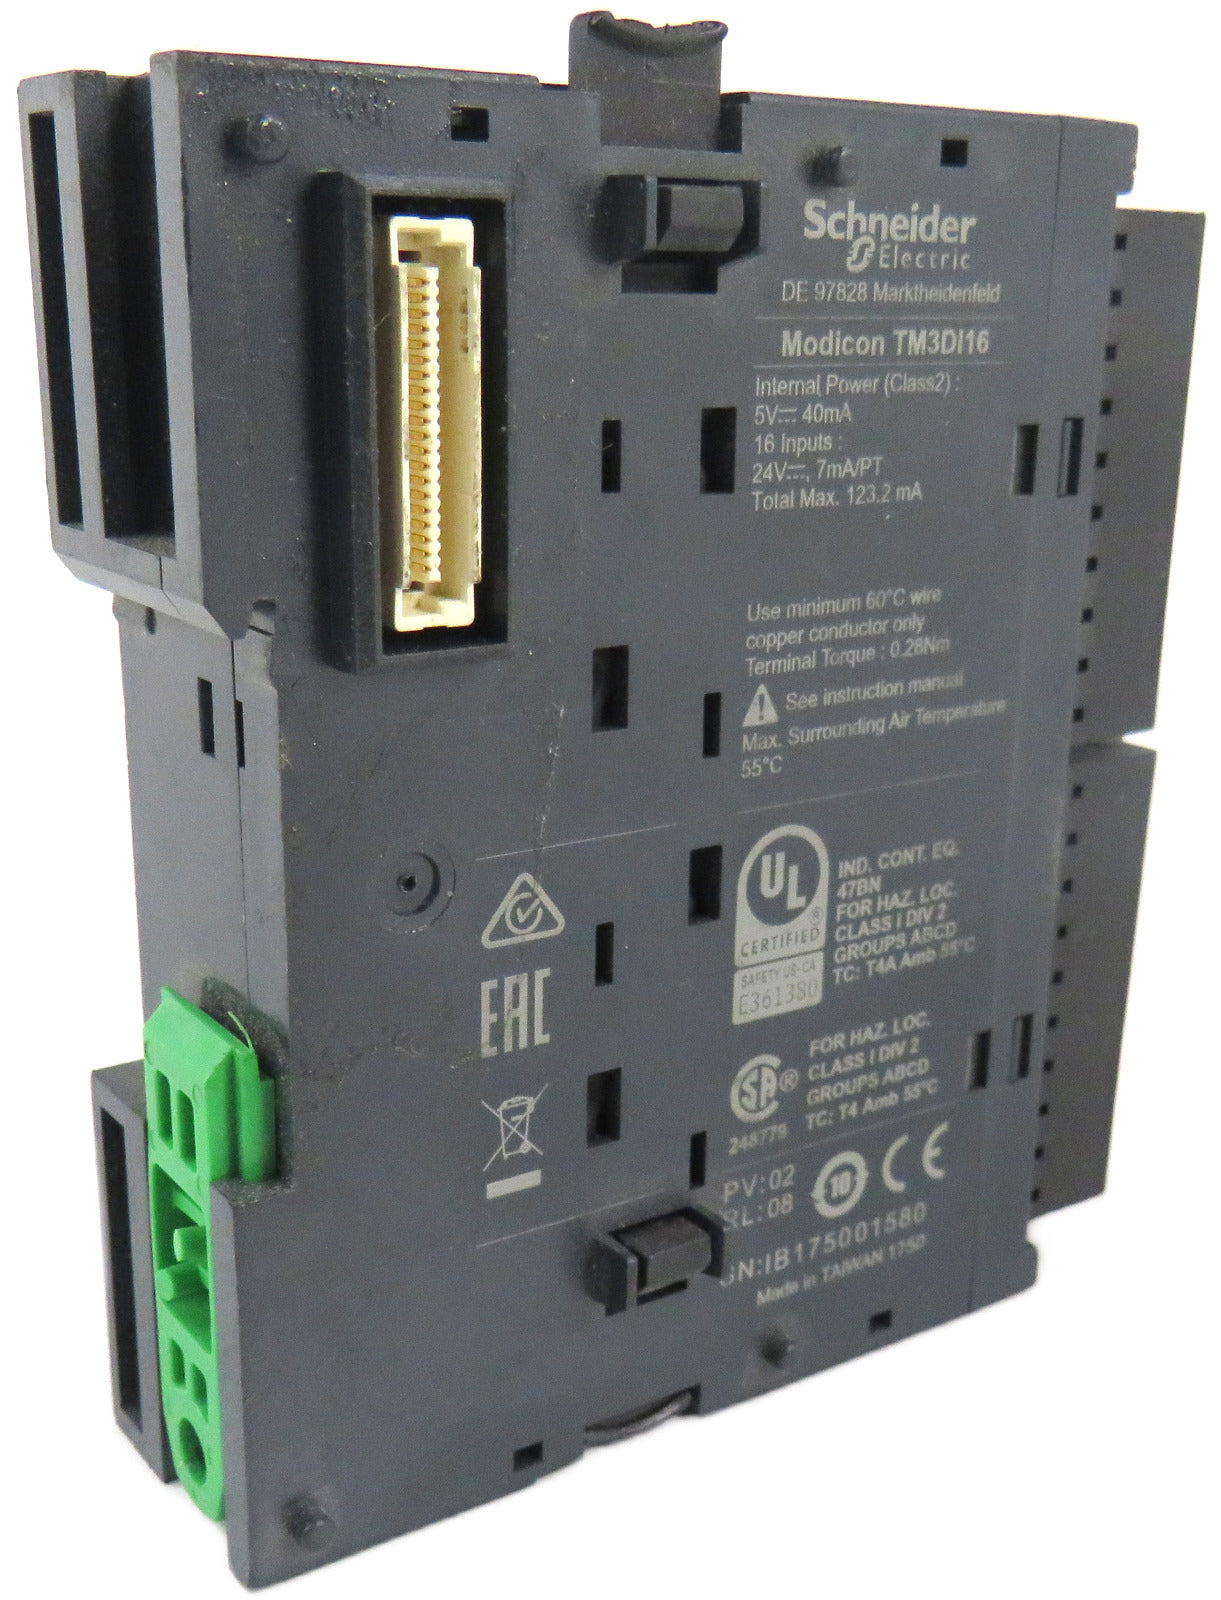 SCHNEIDER ELECTRIC TM3DI16 DIGITAL INPUT MODULE